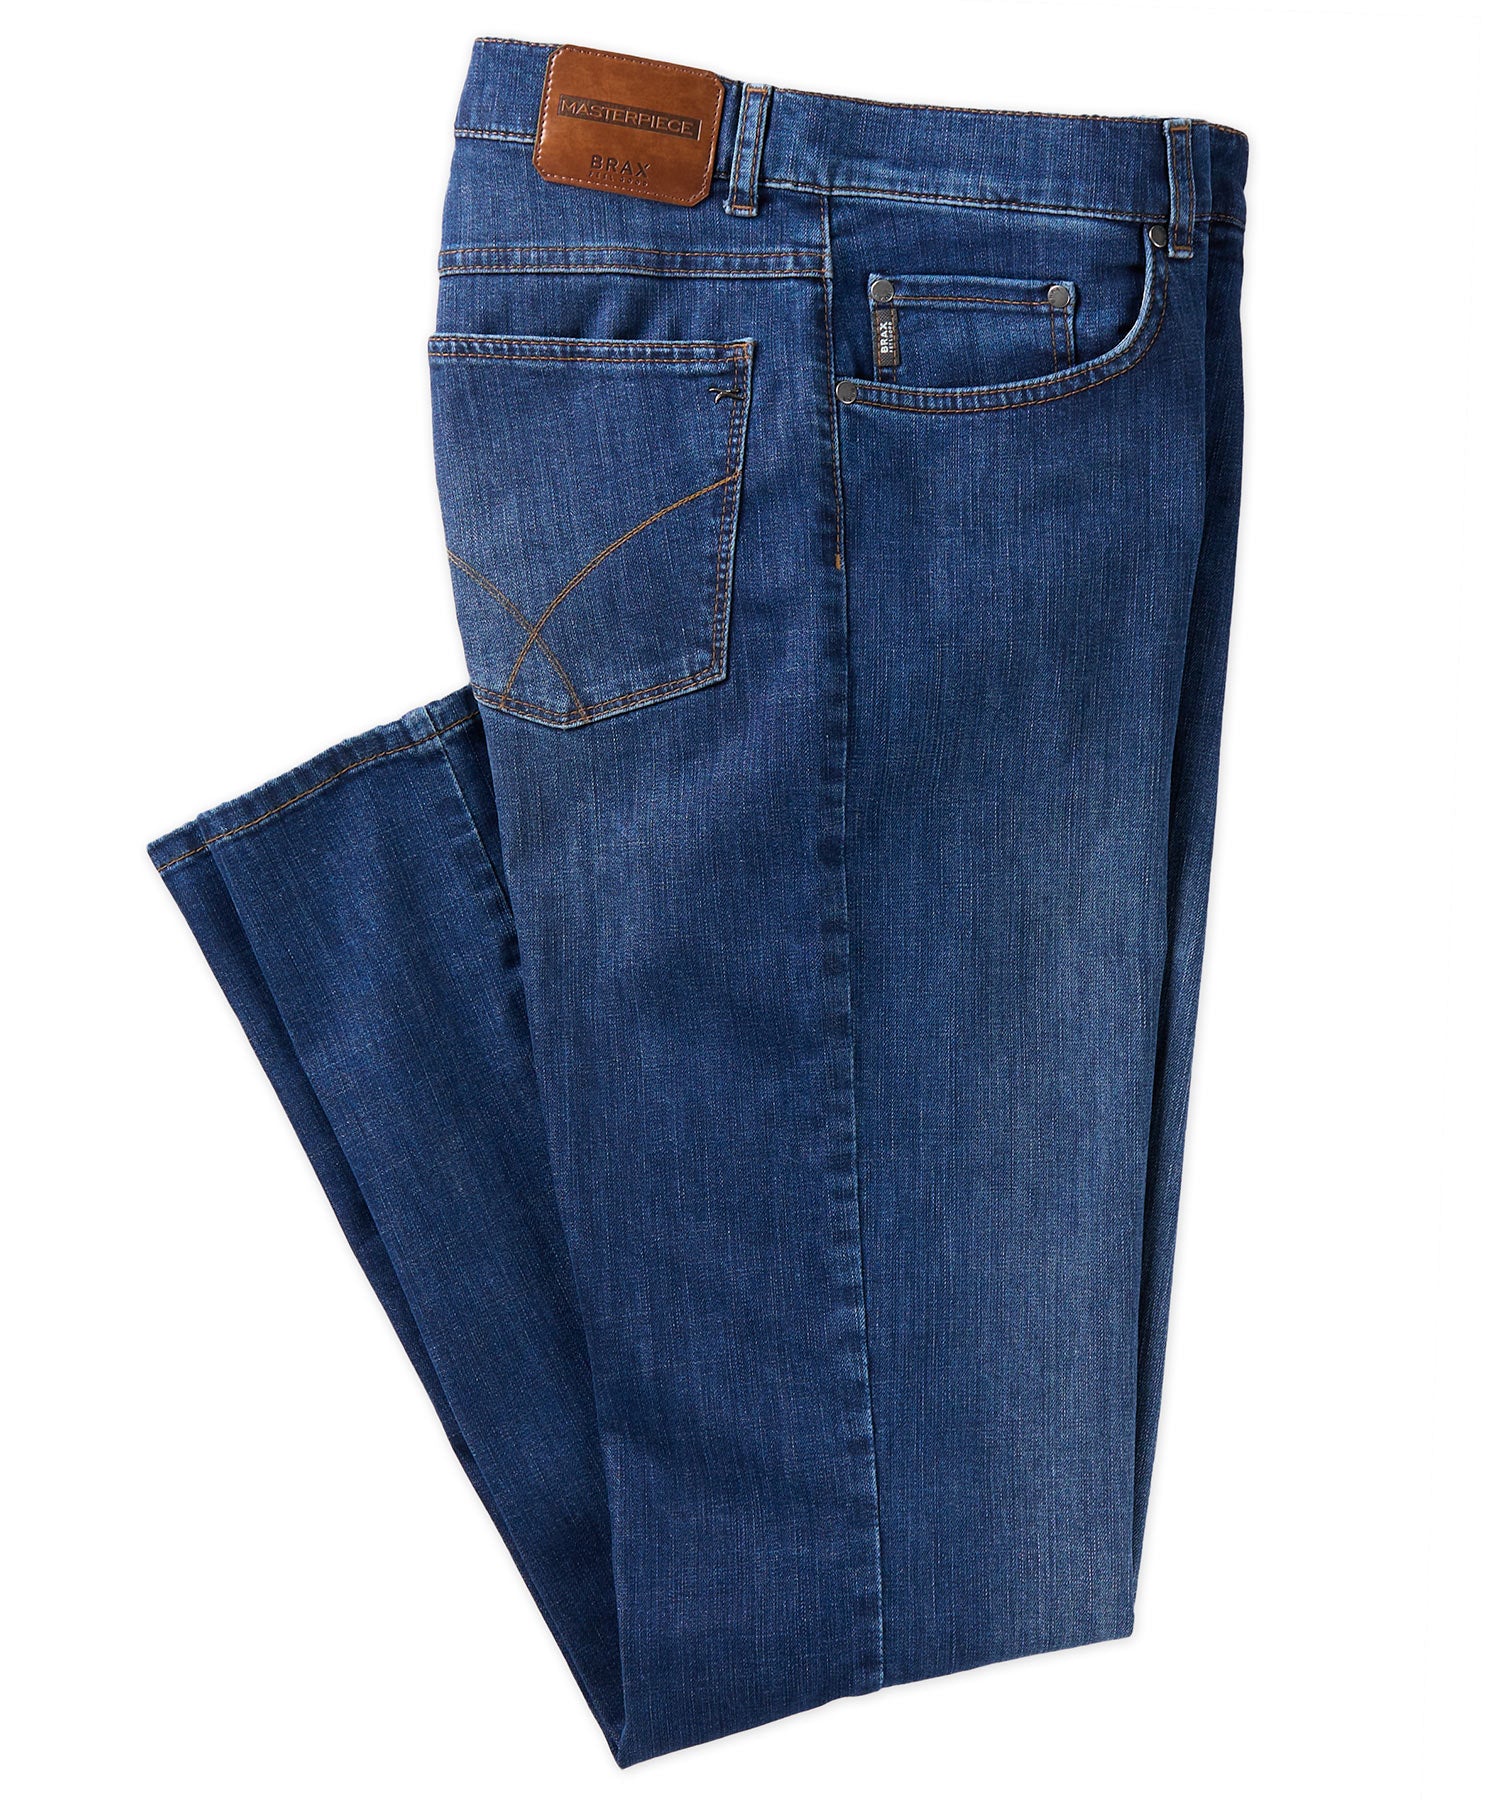 Proximity Denims x HARDENCO x HH 5-Pocket Jean -- DOUBLE KNEE